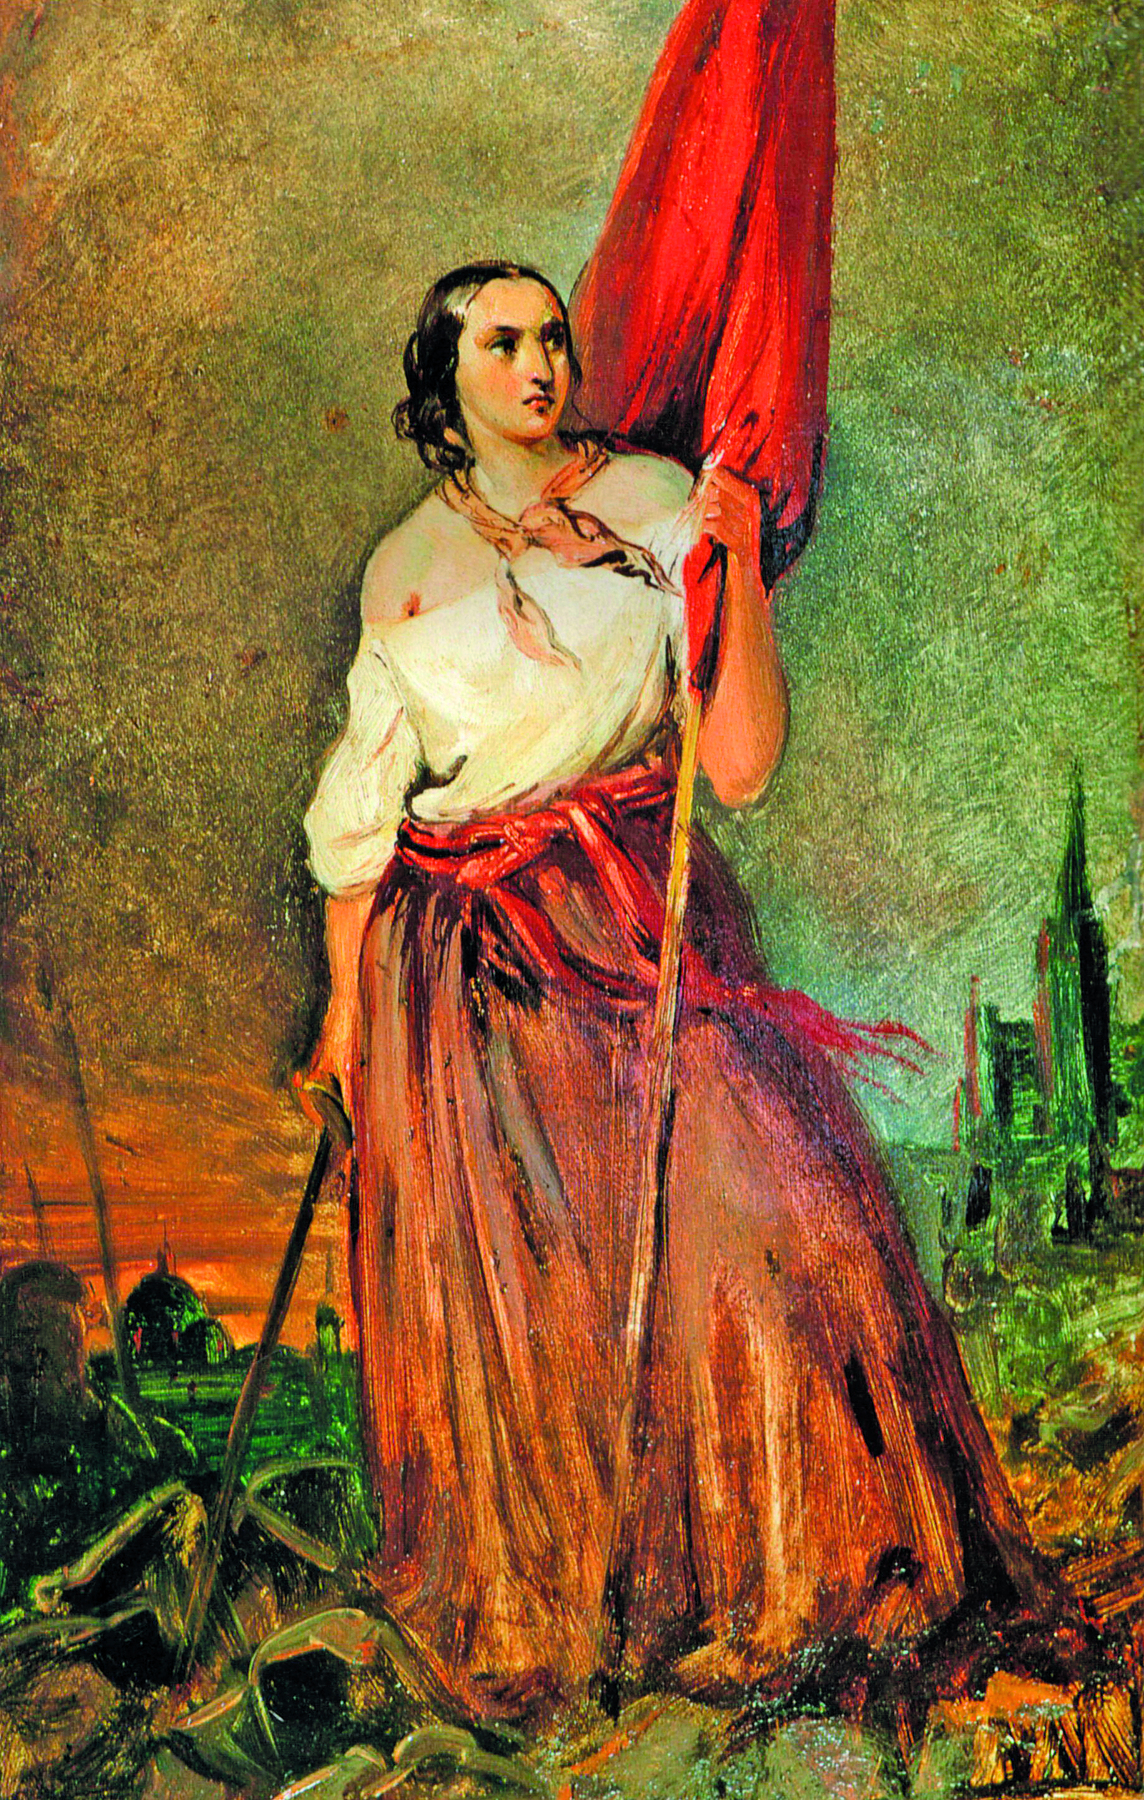 Pintura. Retrato de uma mulher de corpo inteiro, cabelos castanhos, longos, lisos e presos, vestindo uma camisa branca tomara que caia e uma longa saia vermelha, segurando uma bandeira vermelha com a mão esquerda, e uma espada com a direita.